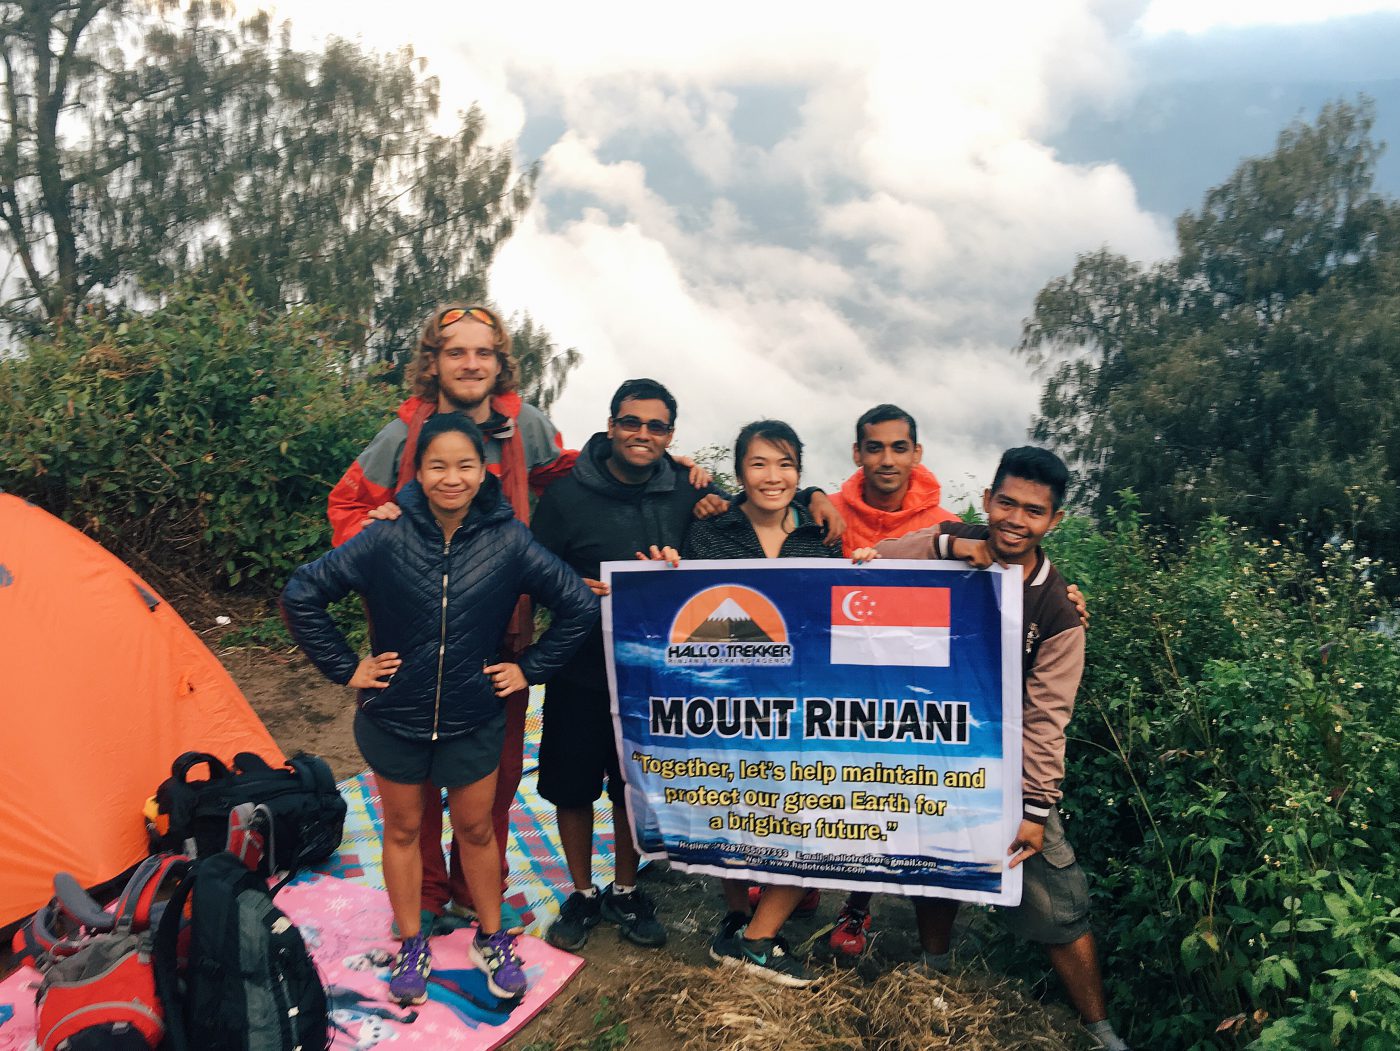 Mount Rinjani Trekking - With Hallo Trekker at the top of Crater Rim